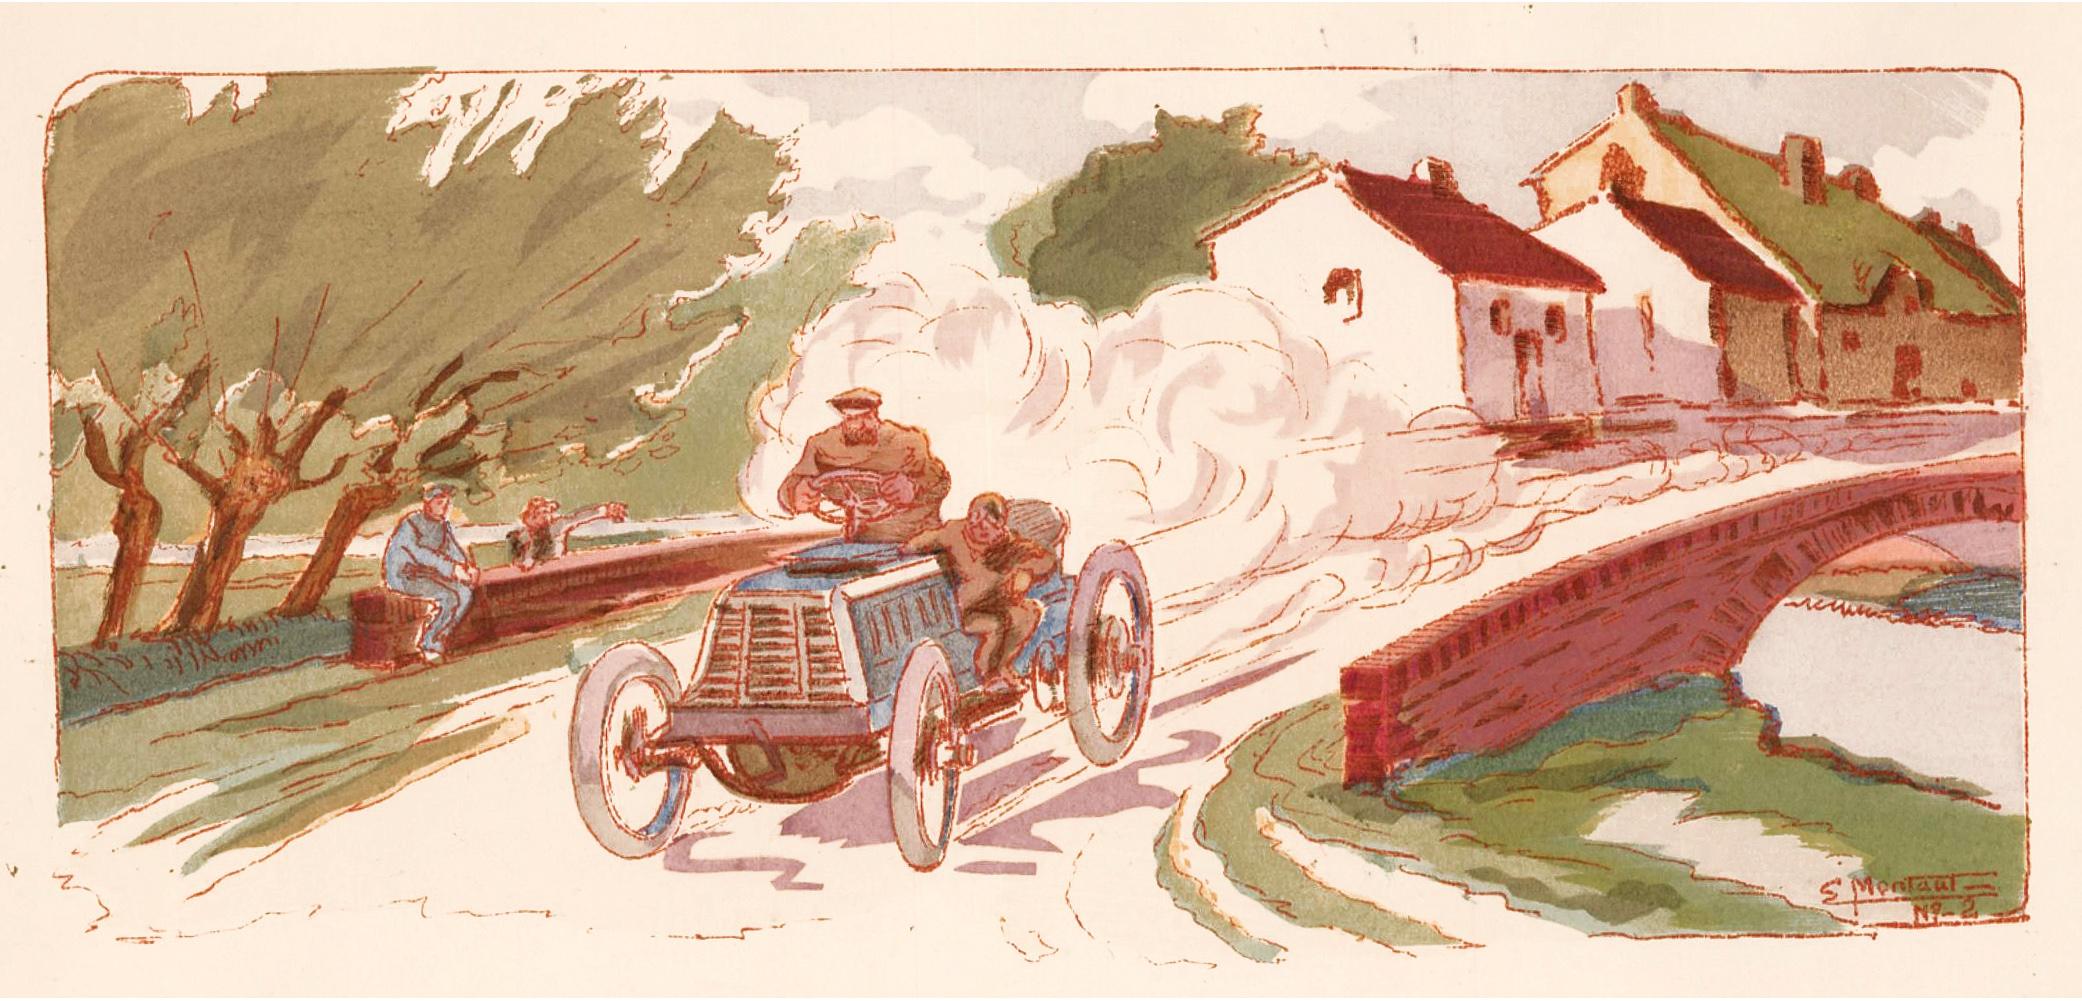 Tour de France, 1899. - Print by Ernest Montaut